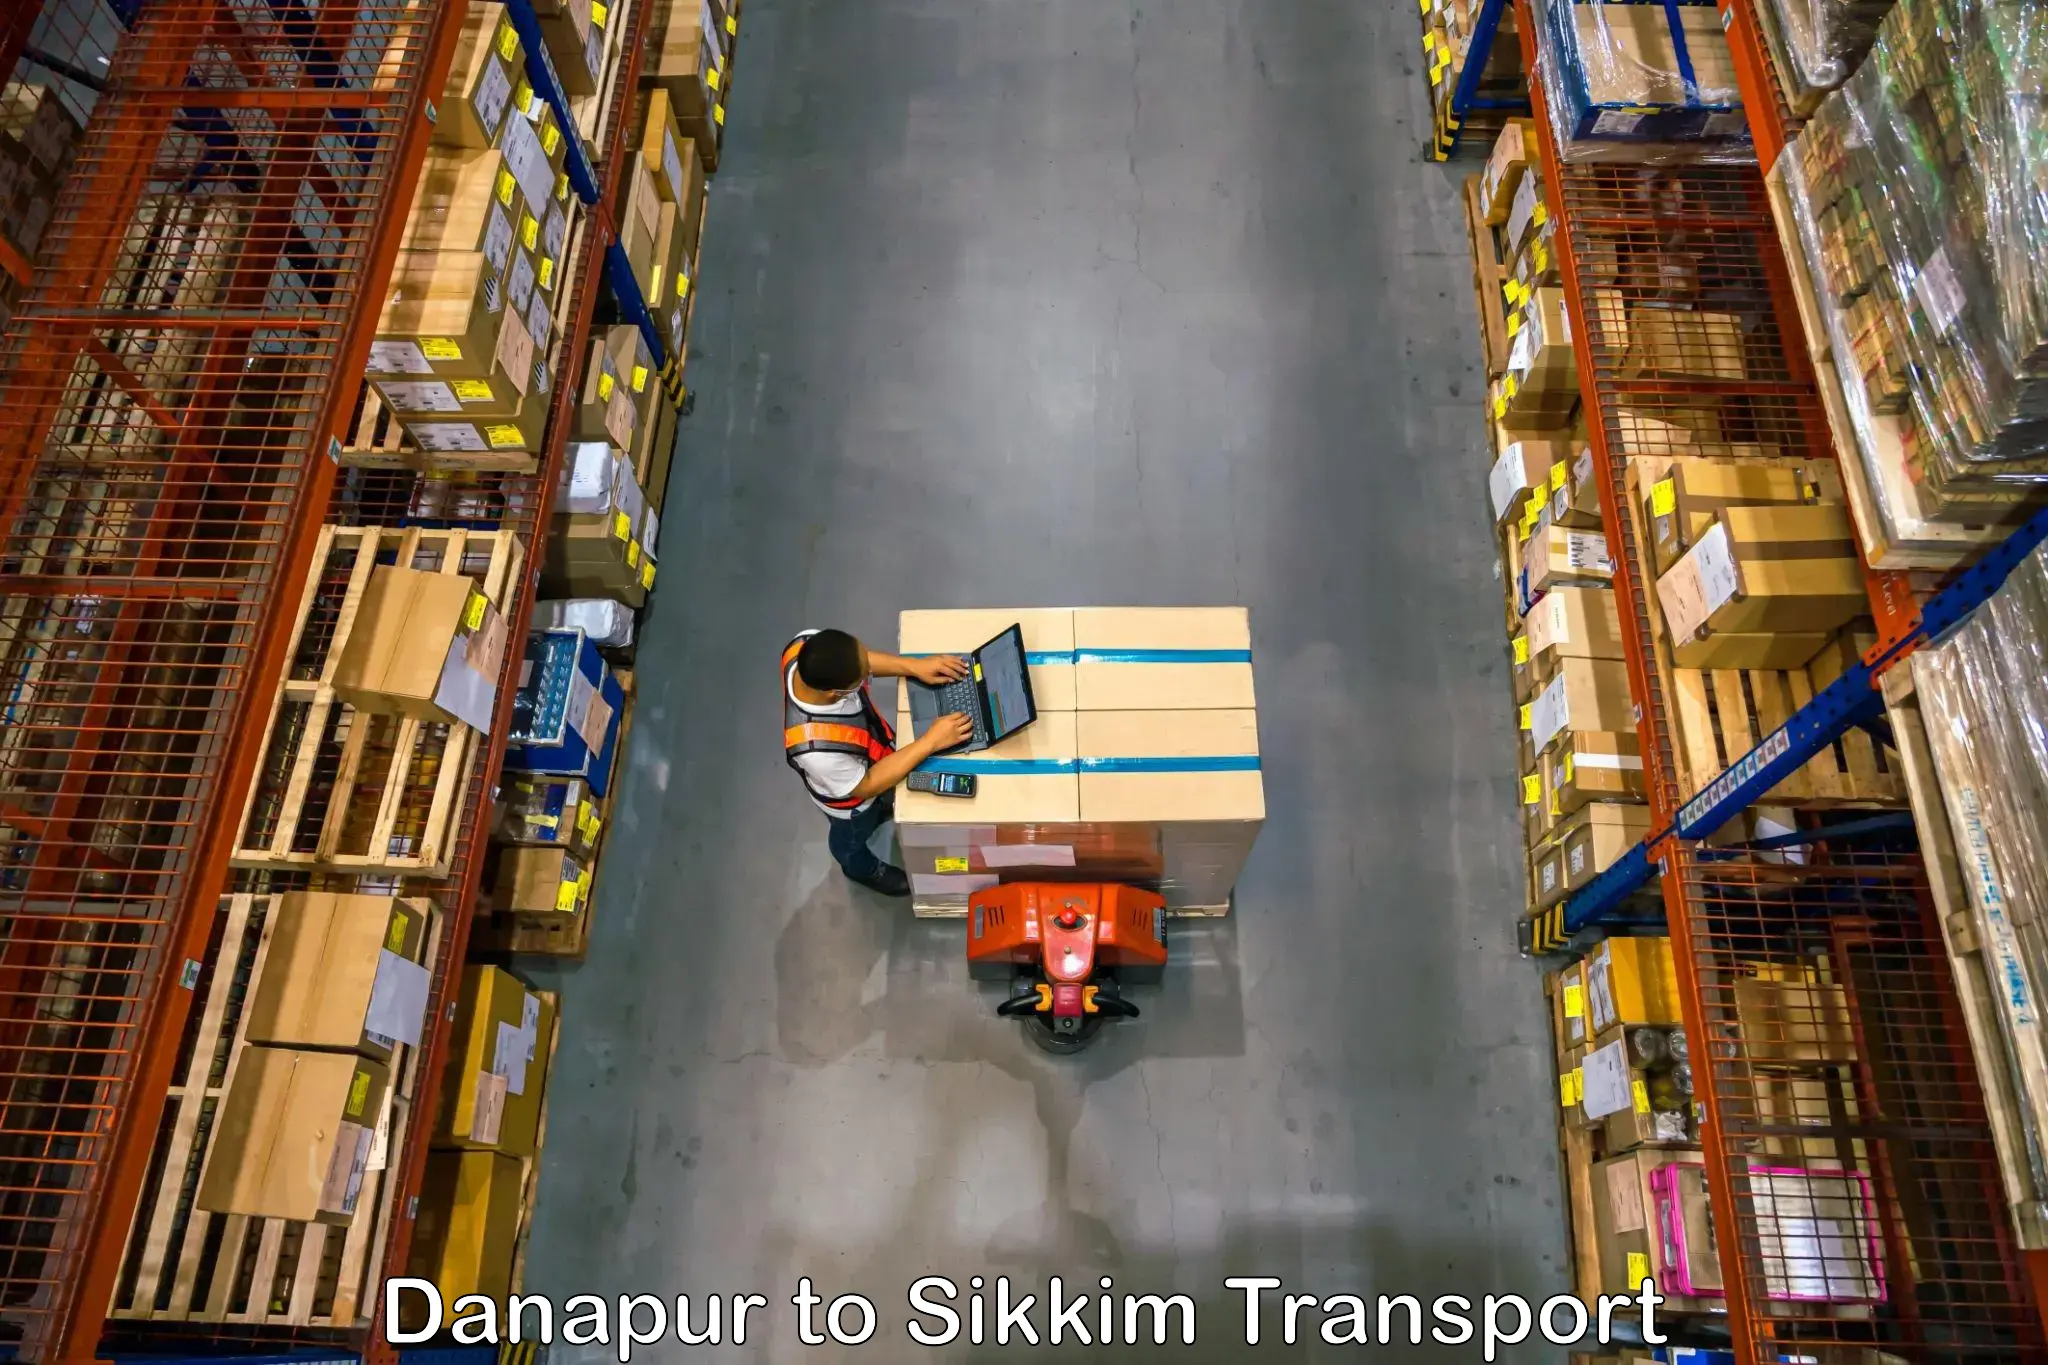 Shipping partner Danapur to Jorethang